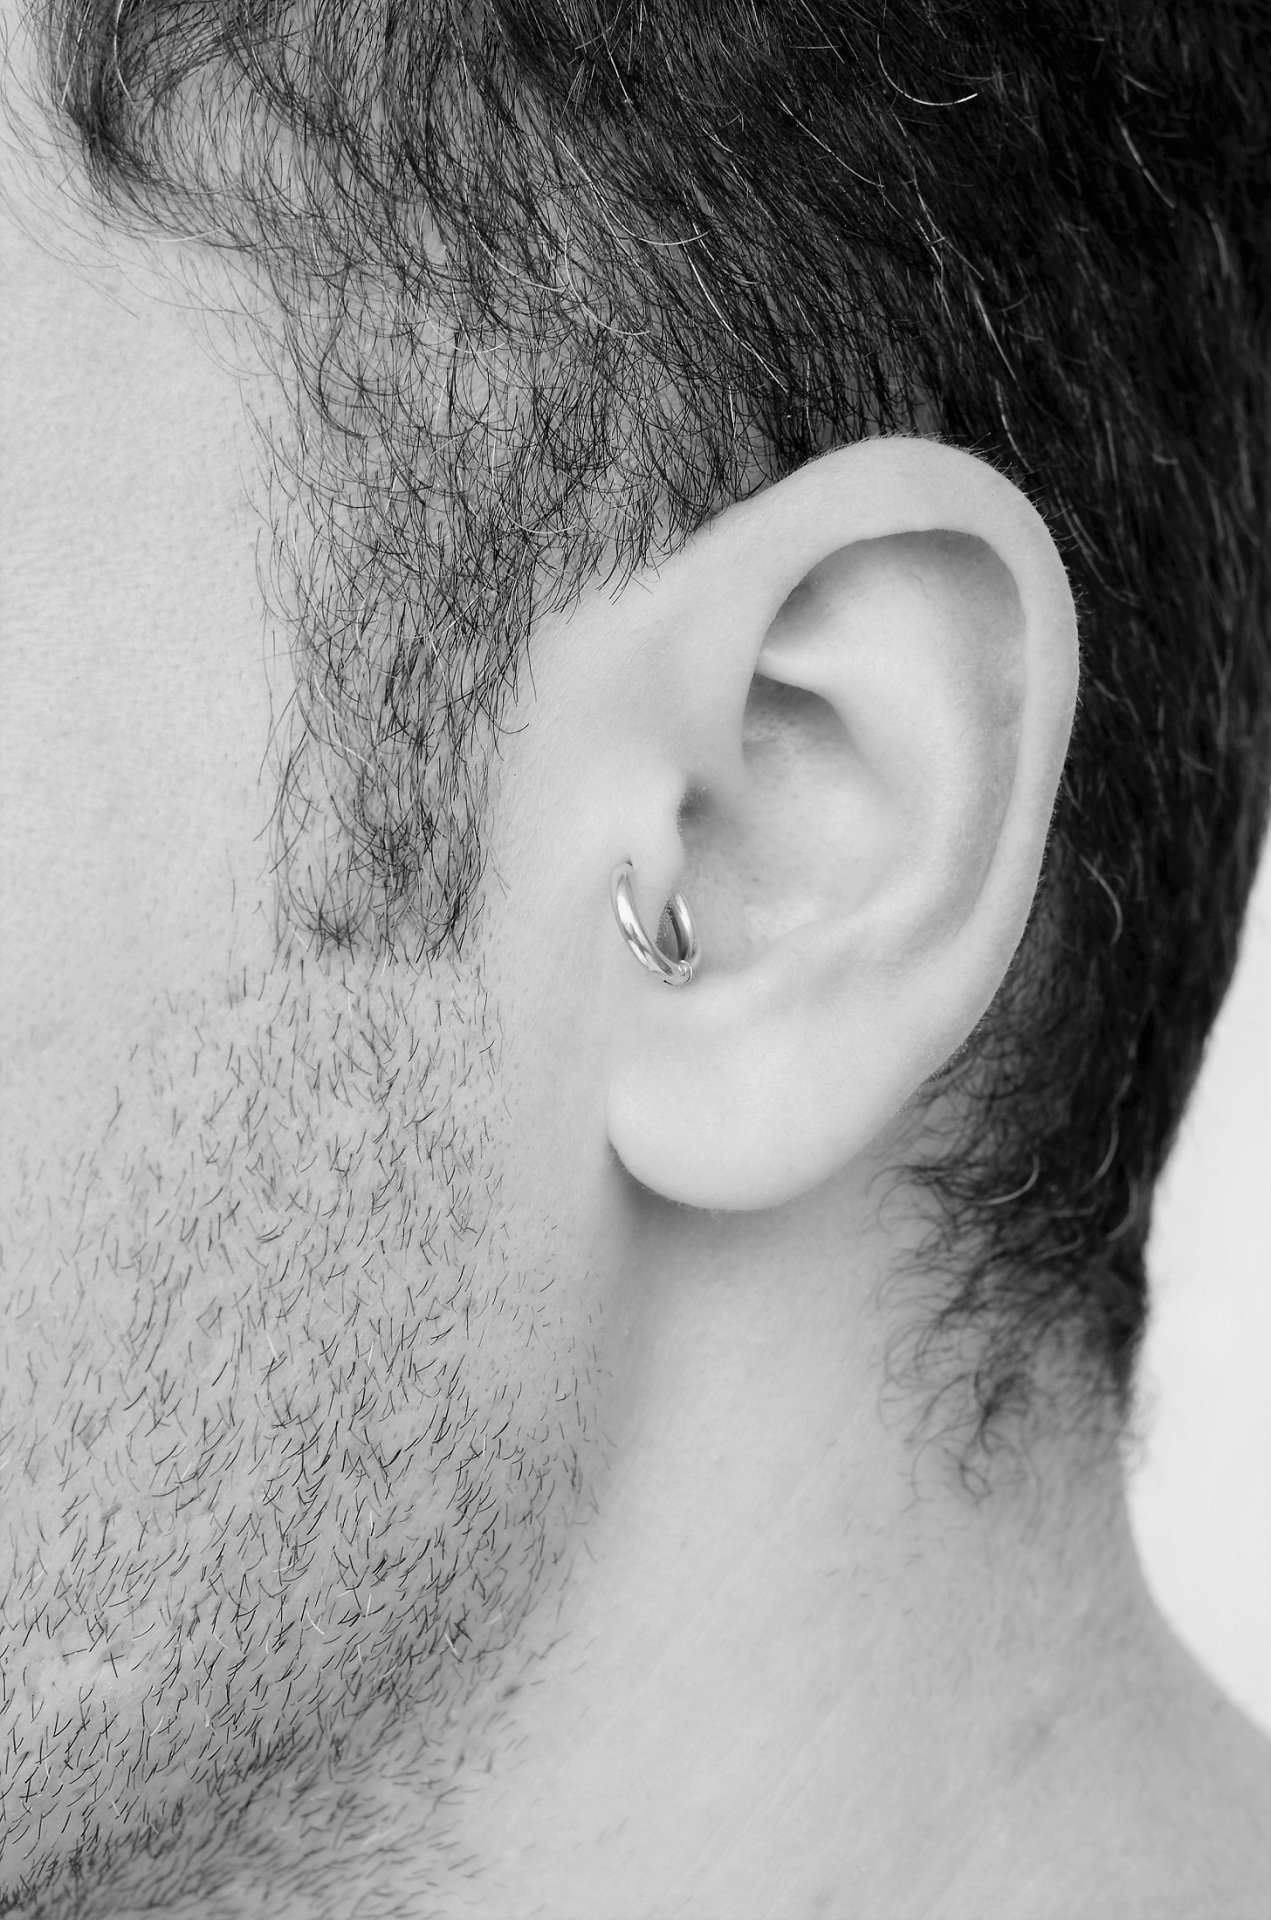 Erkek Çelik Halka Piercing Tragus Helix Kıkırdak 8 mm